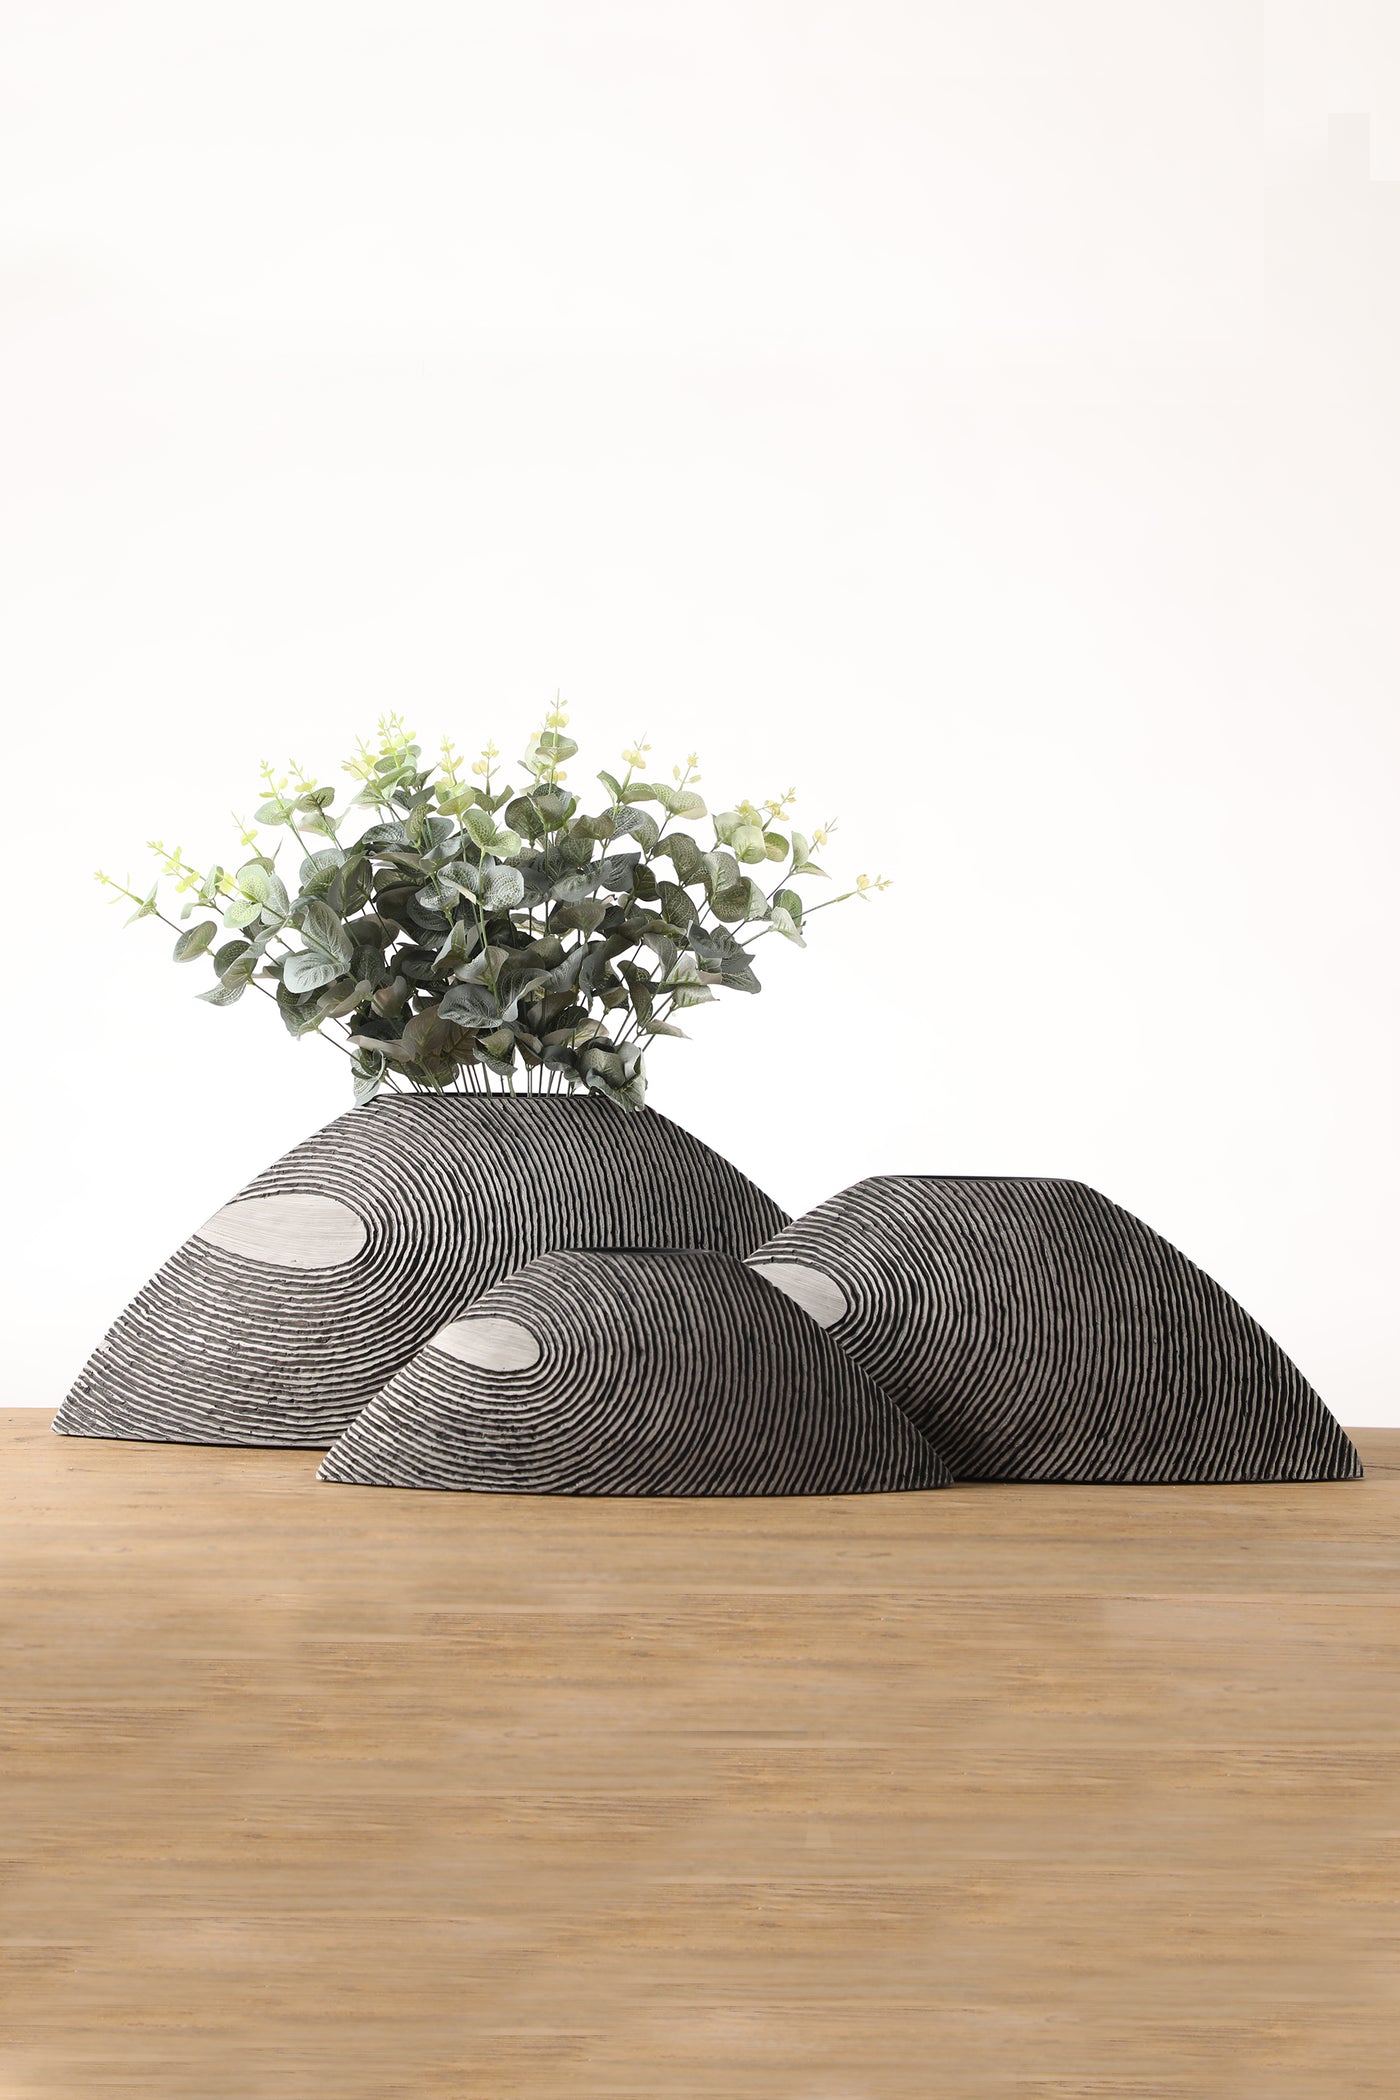 Bowl shape resin flower vase for your home or office decor